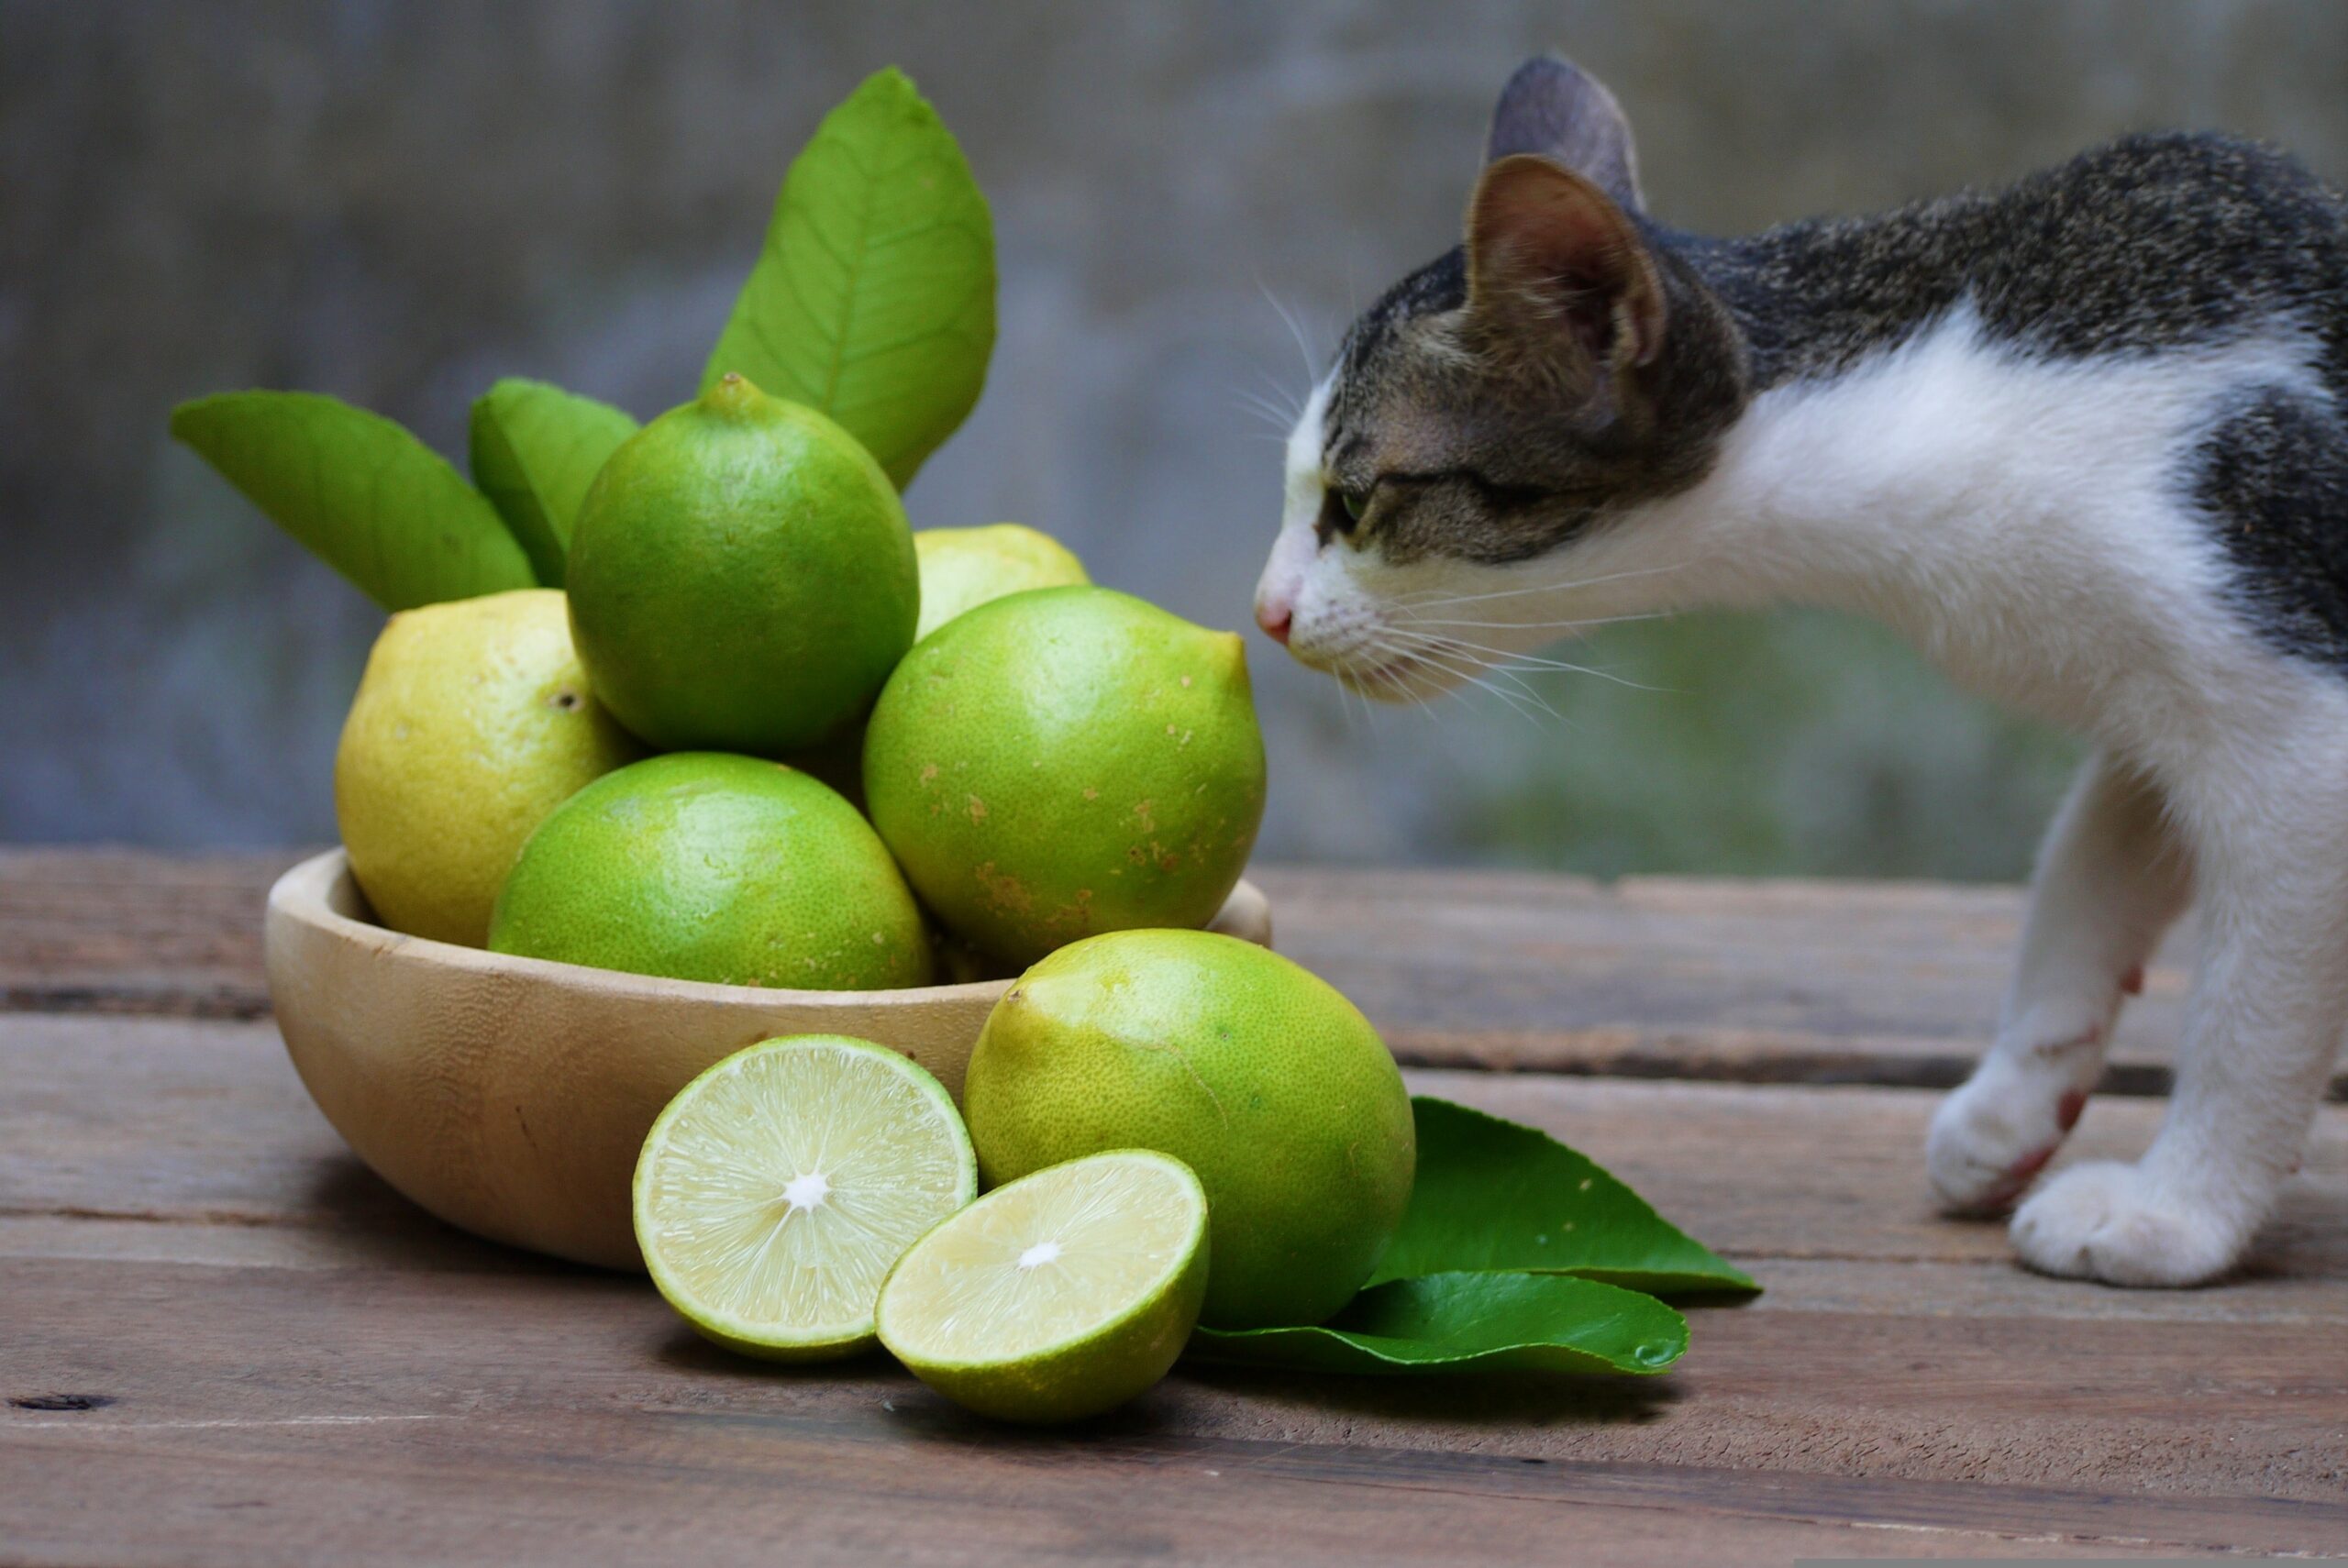 Сильный запах кошки. Кошки и цитрусовые. Кошка и лимон. Кошки не любят запах Ци. Кошка с фруктами.